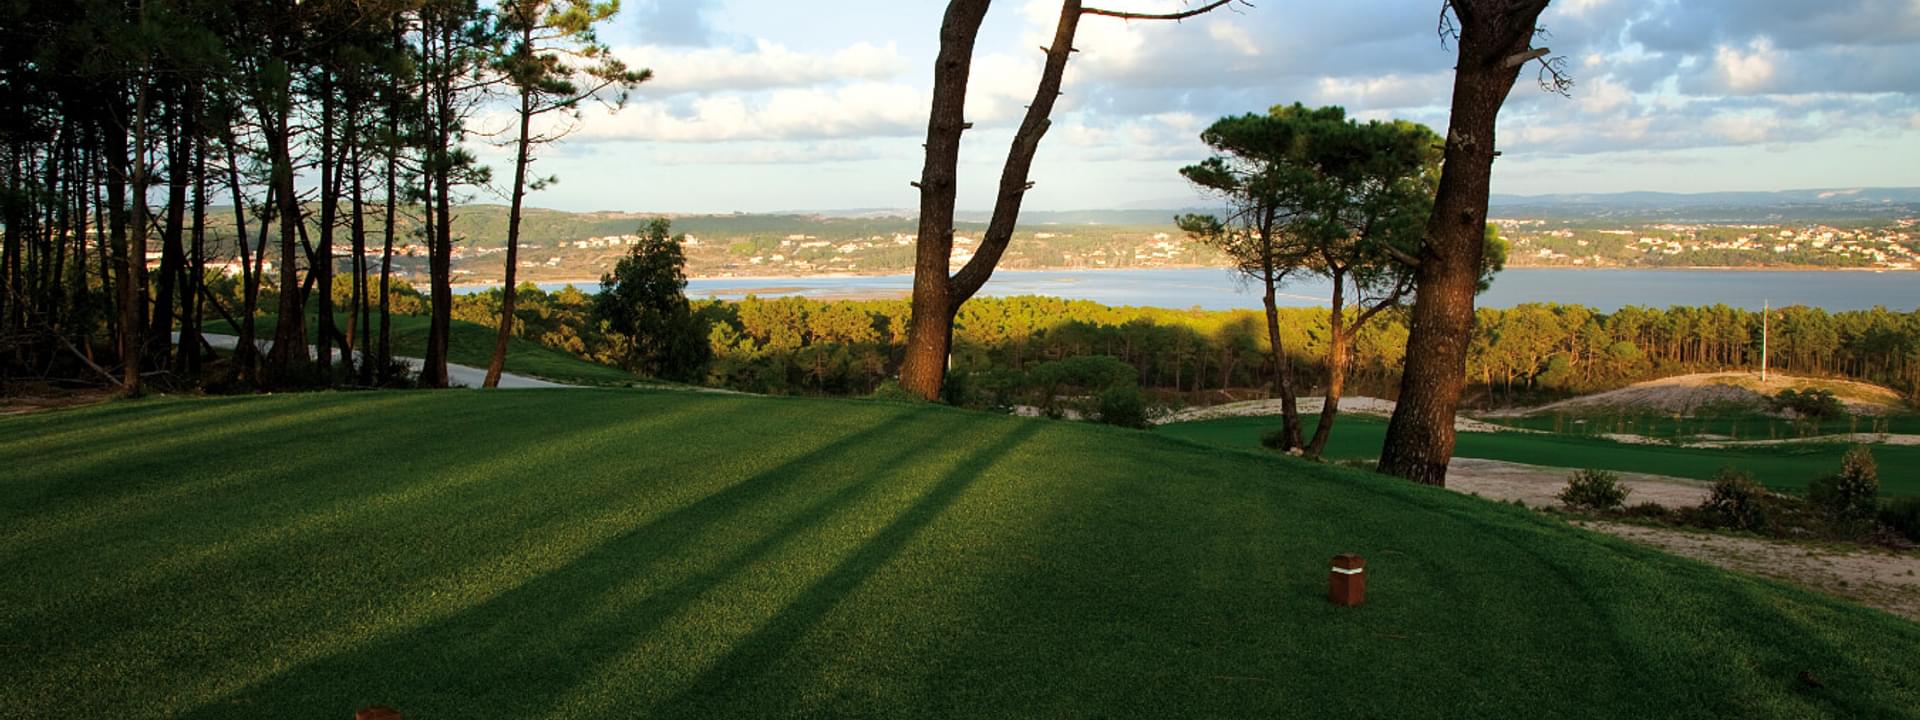 Die 5 besten Golfplätze im Centro de Portugal: eine Top-Liste Golfadressen